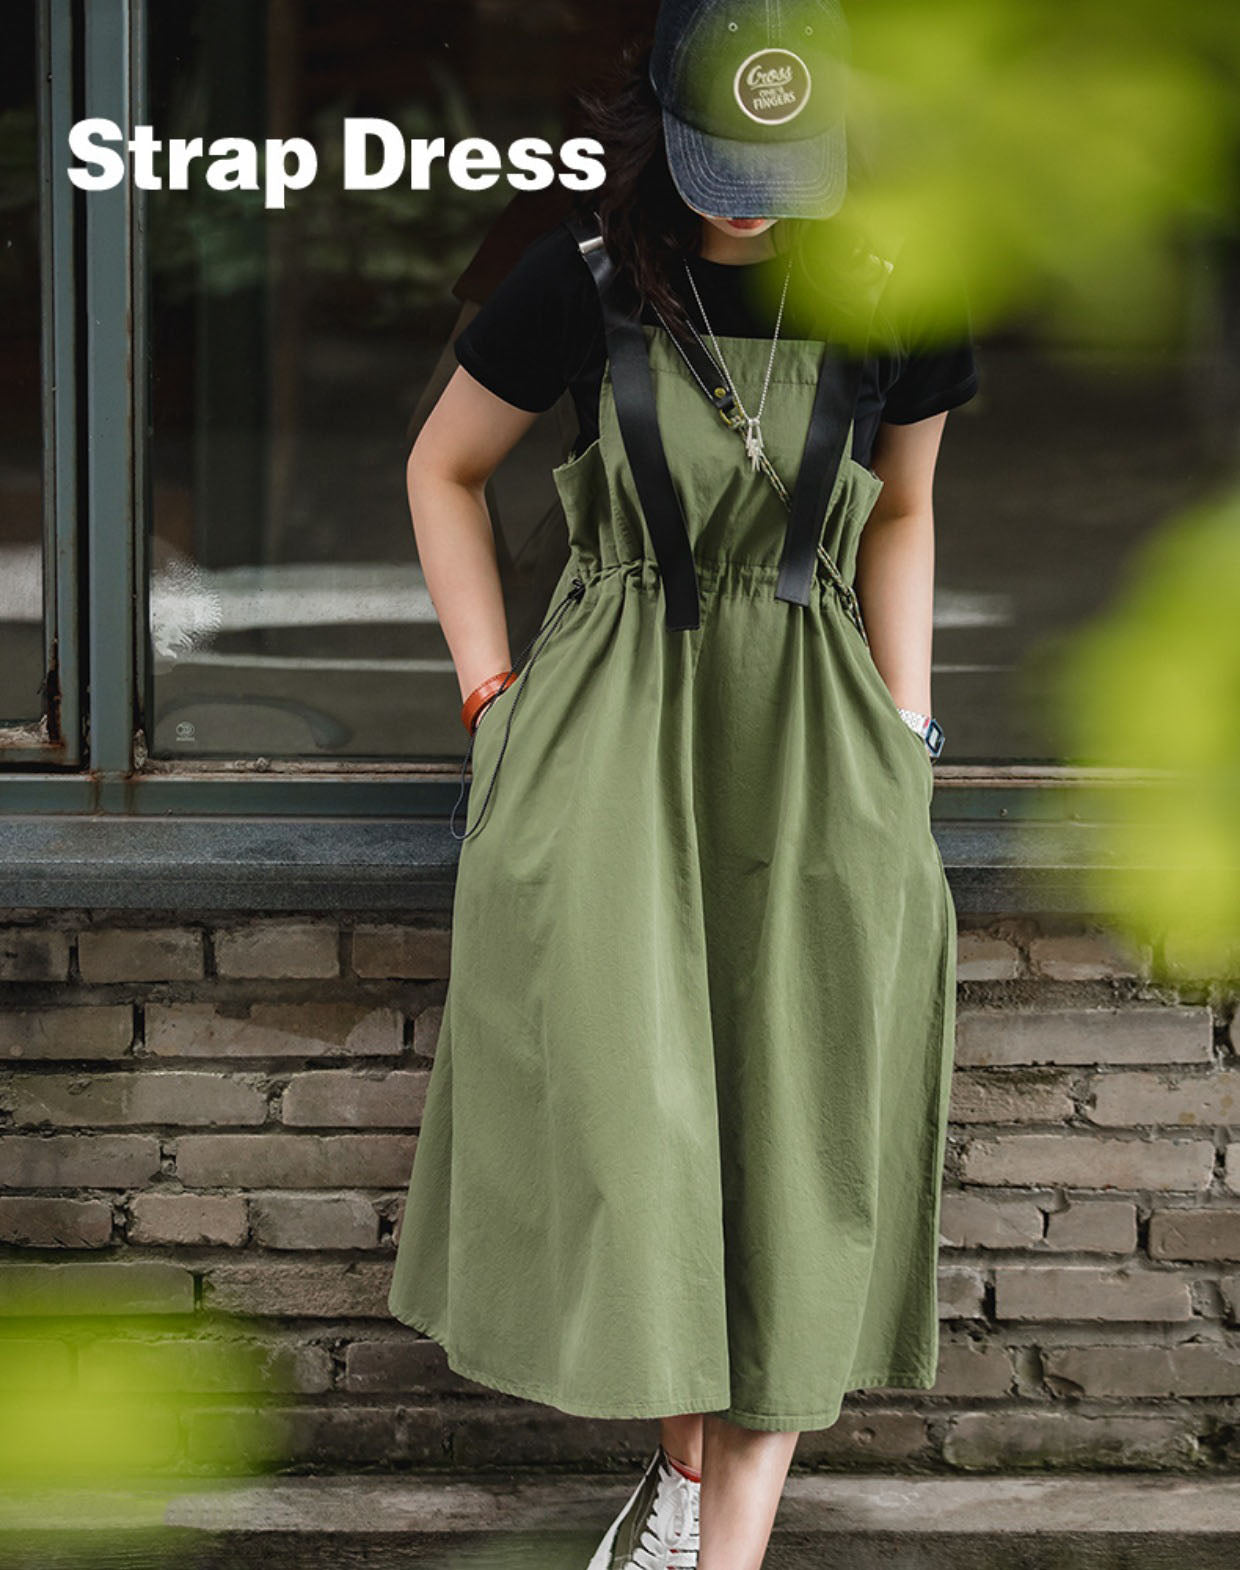 Workwear Casual Pear-Shaped Slim Waist Suspenders Women's Dress